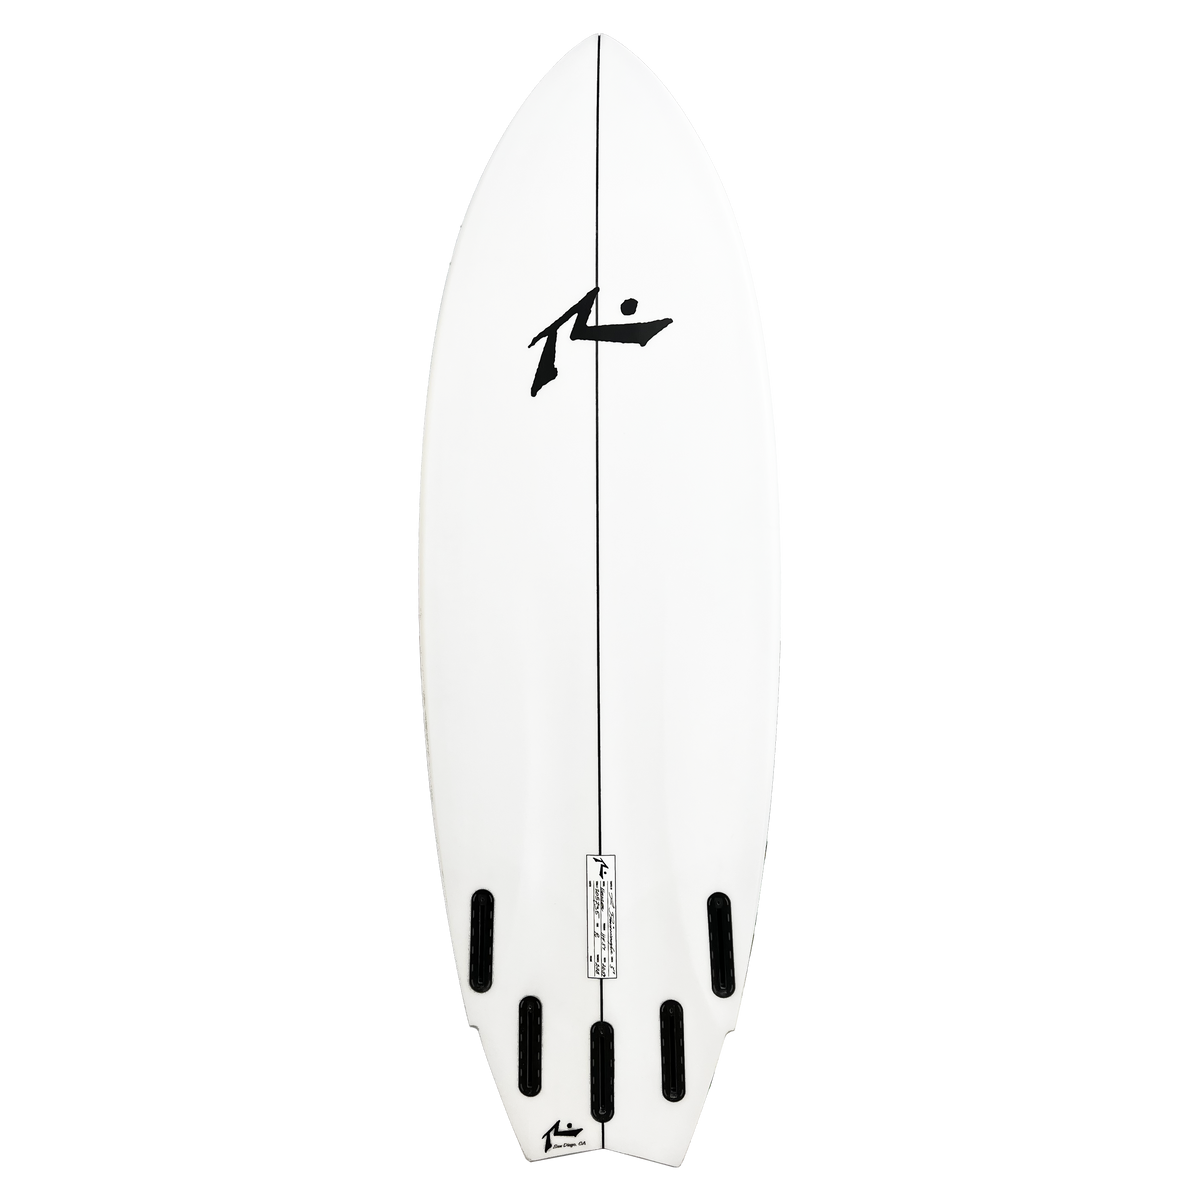 Heckler - Bottom View - Rusty Surfboards